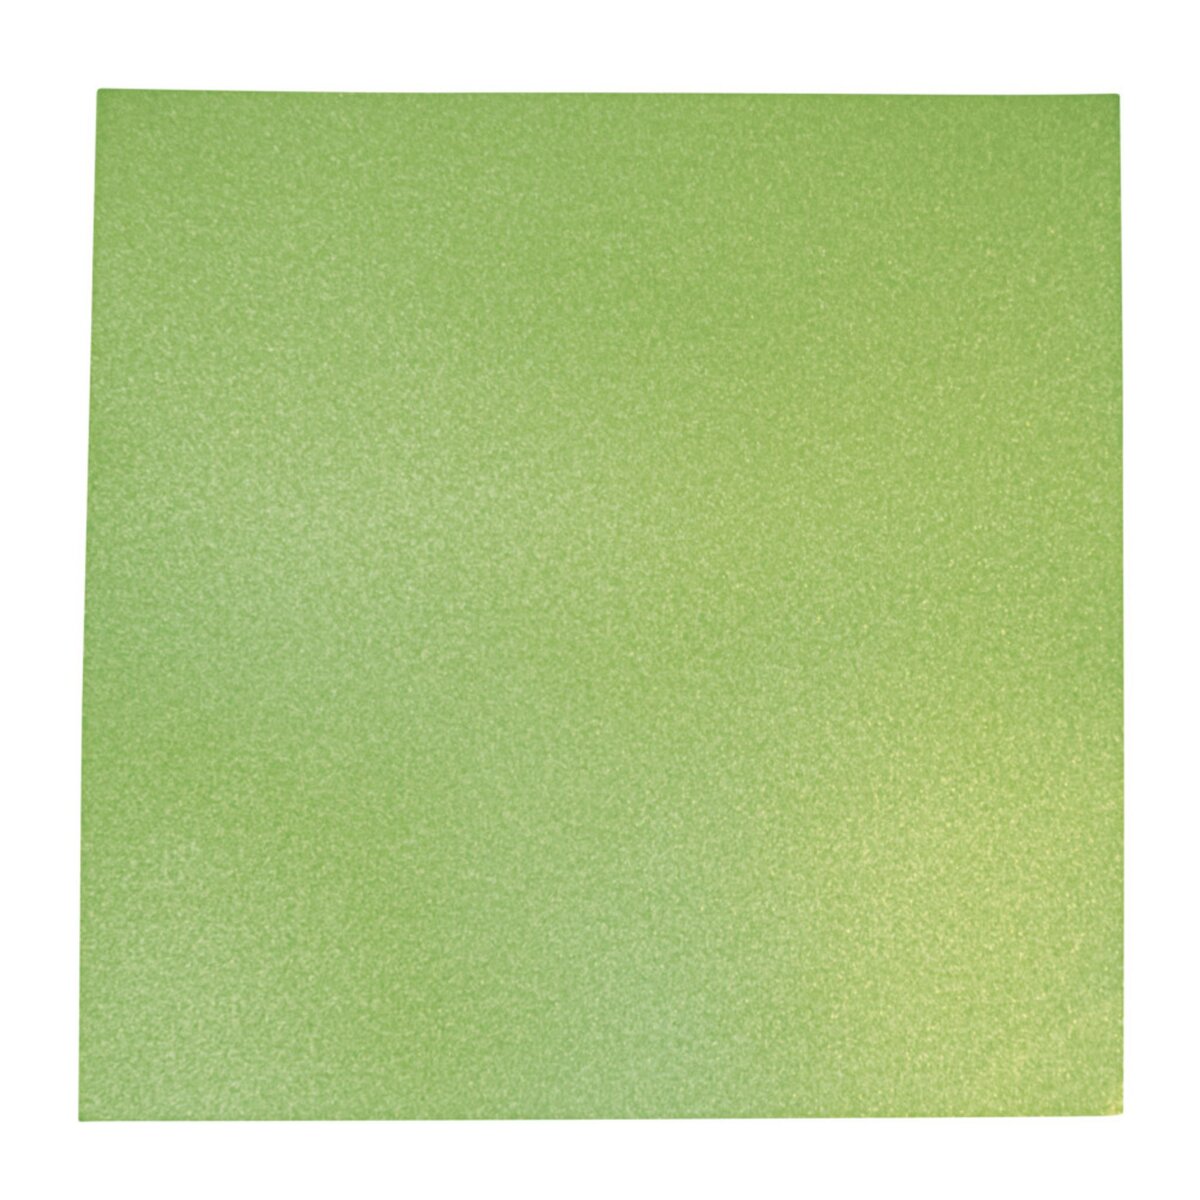 Rayher Papi.scrap. effet mét. Paillettes fines, vert mai, 30,5x30,5cm, 210g  / m² - lot de 10 feuilles pas cher 